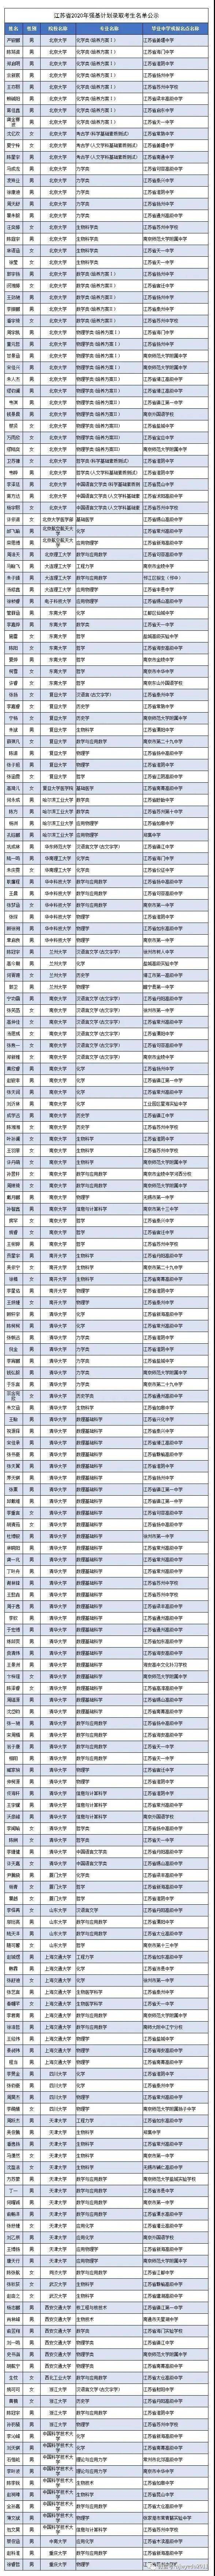 2020年江苏高考前10排名_2020强基计划江苏录取名单,南京10人被清